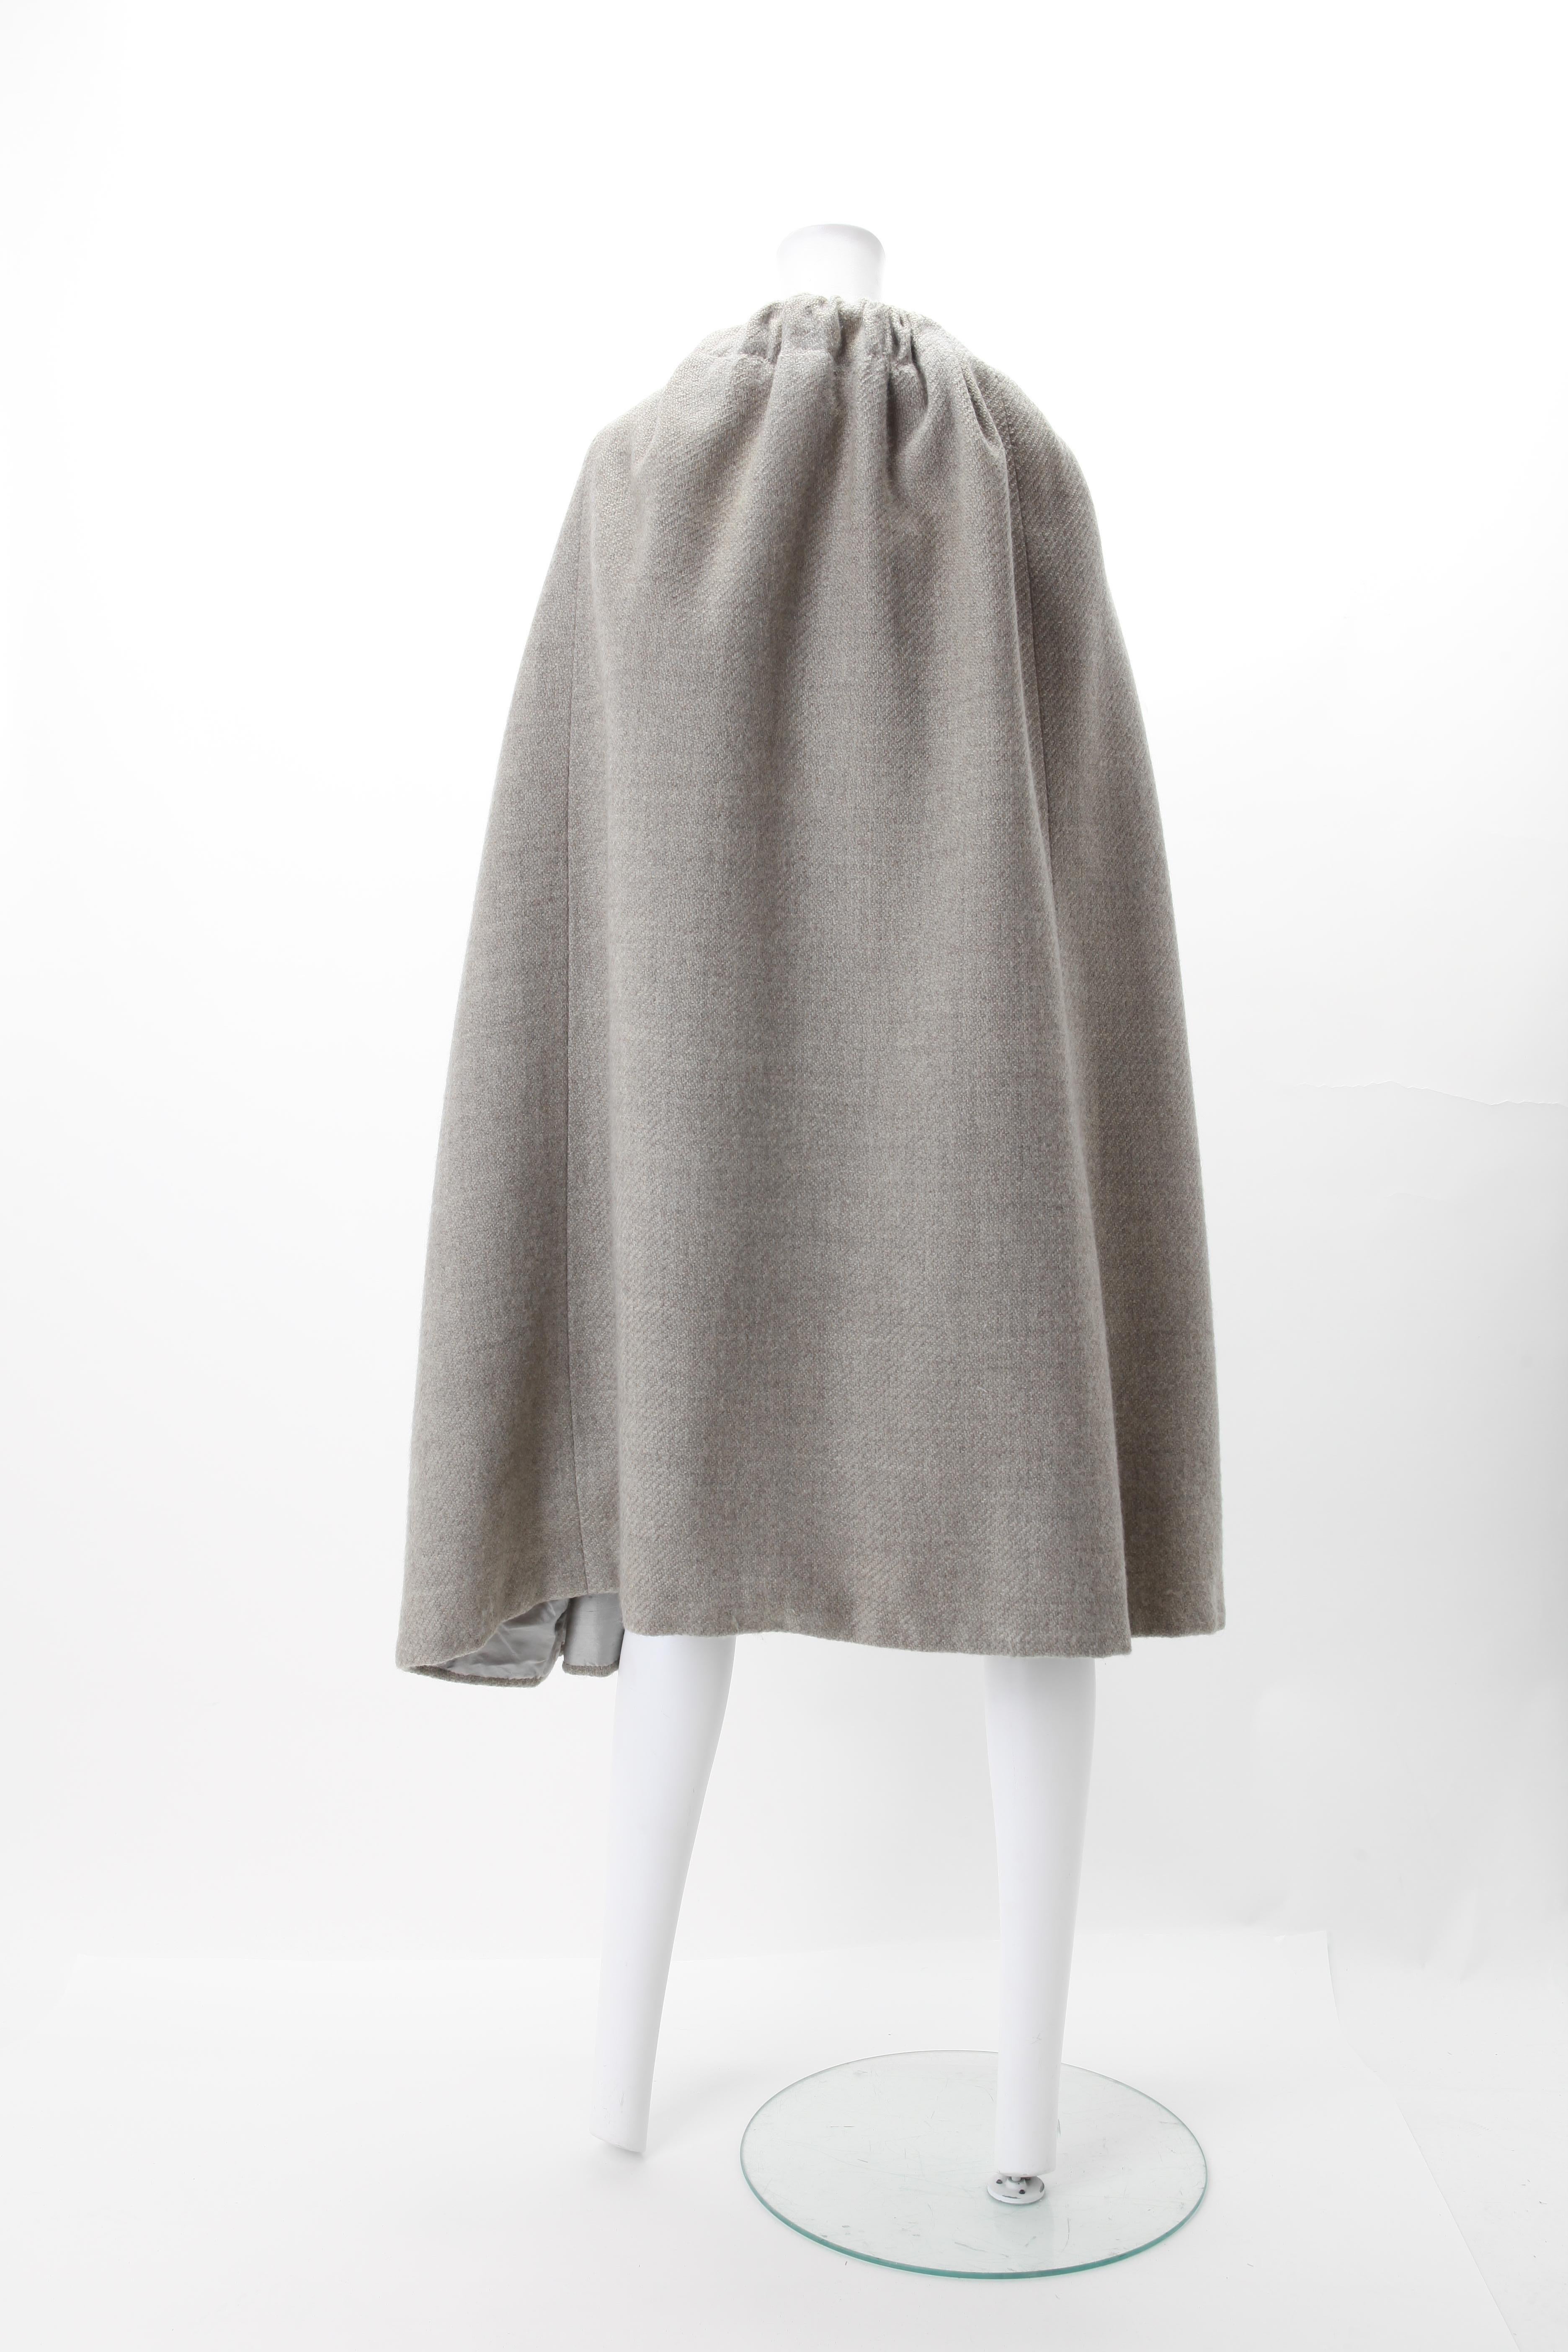 Cape en tricot de laine Balenciaga Couture, c.1970
cape en laine grise Balenciaga Couture des années 1970, numérotée 